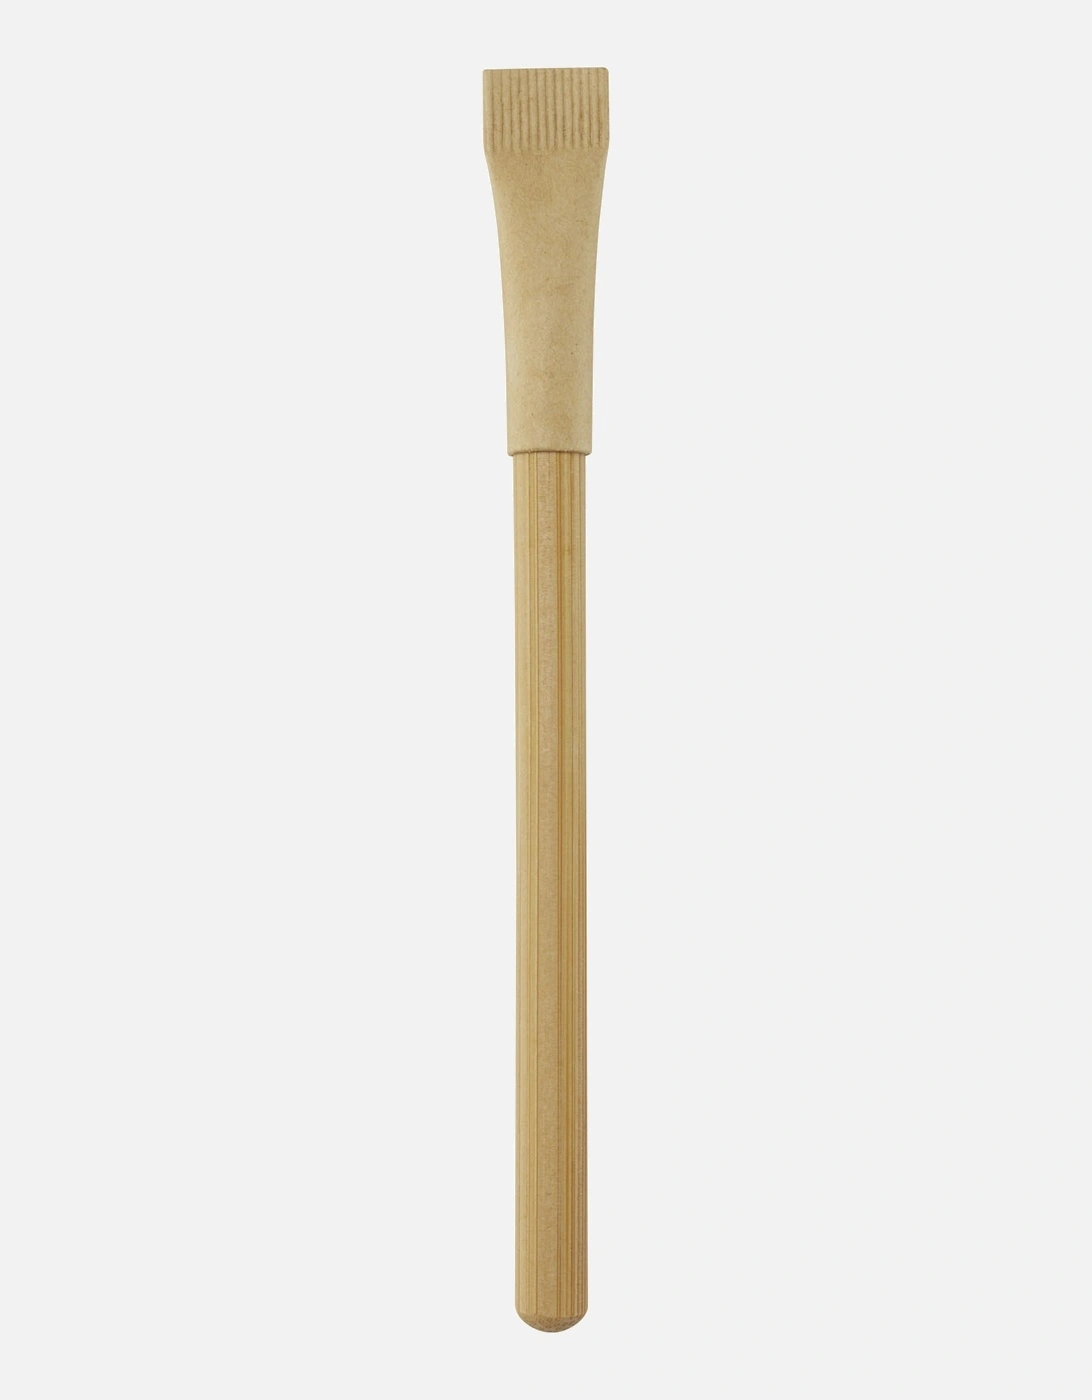 Seniko Bamboo Pencil, 3 of 2